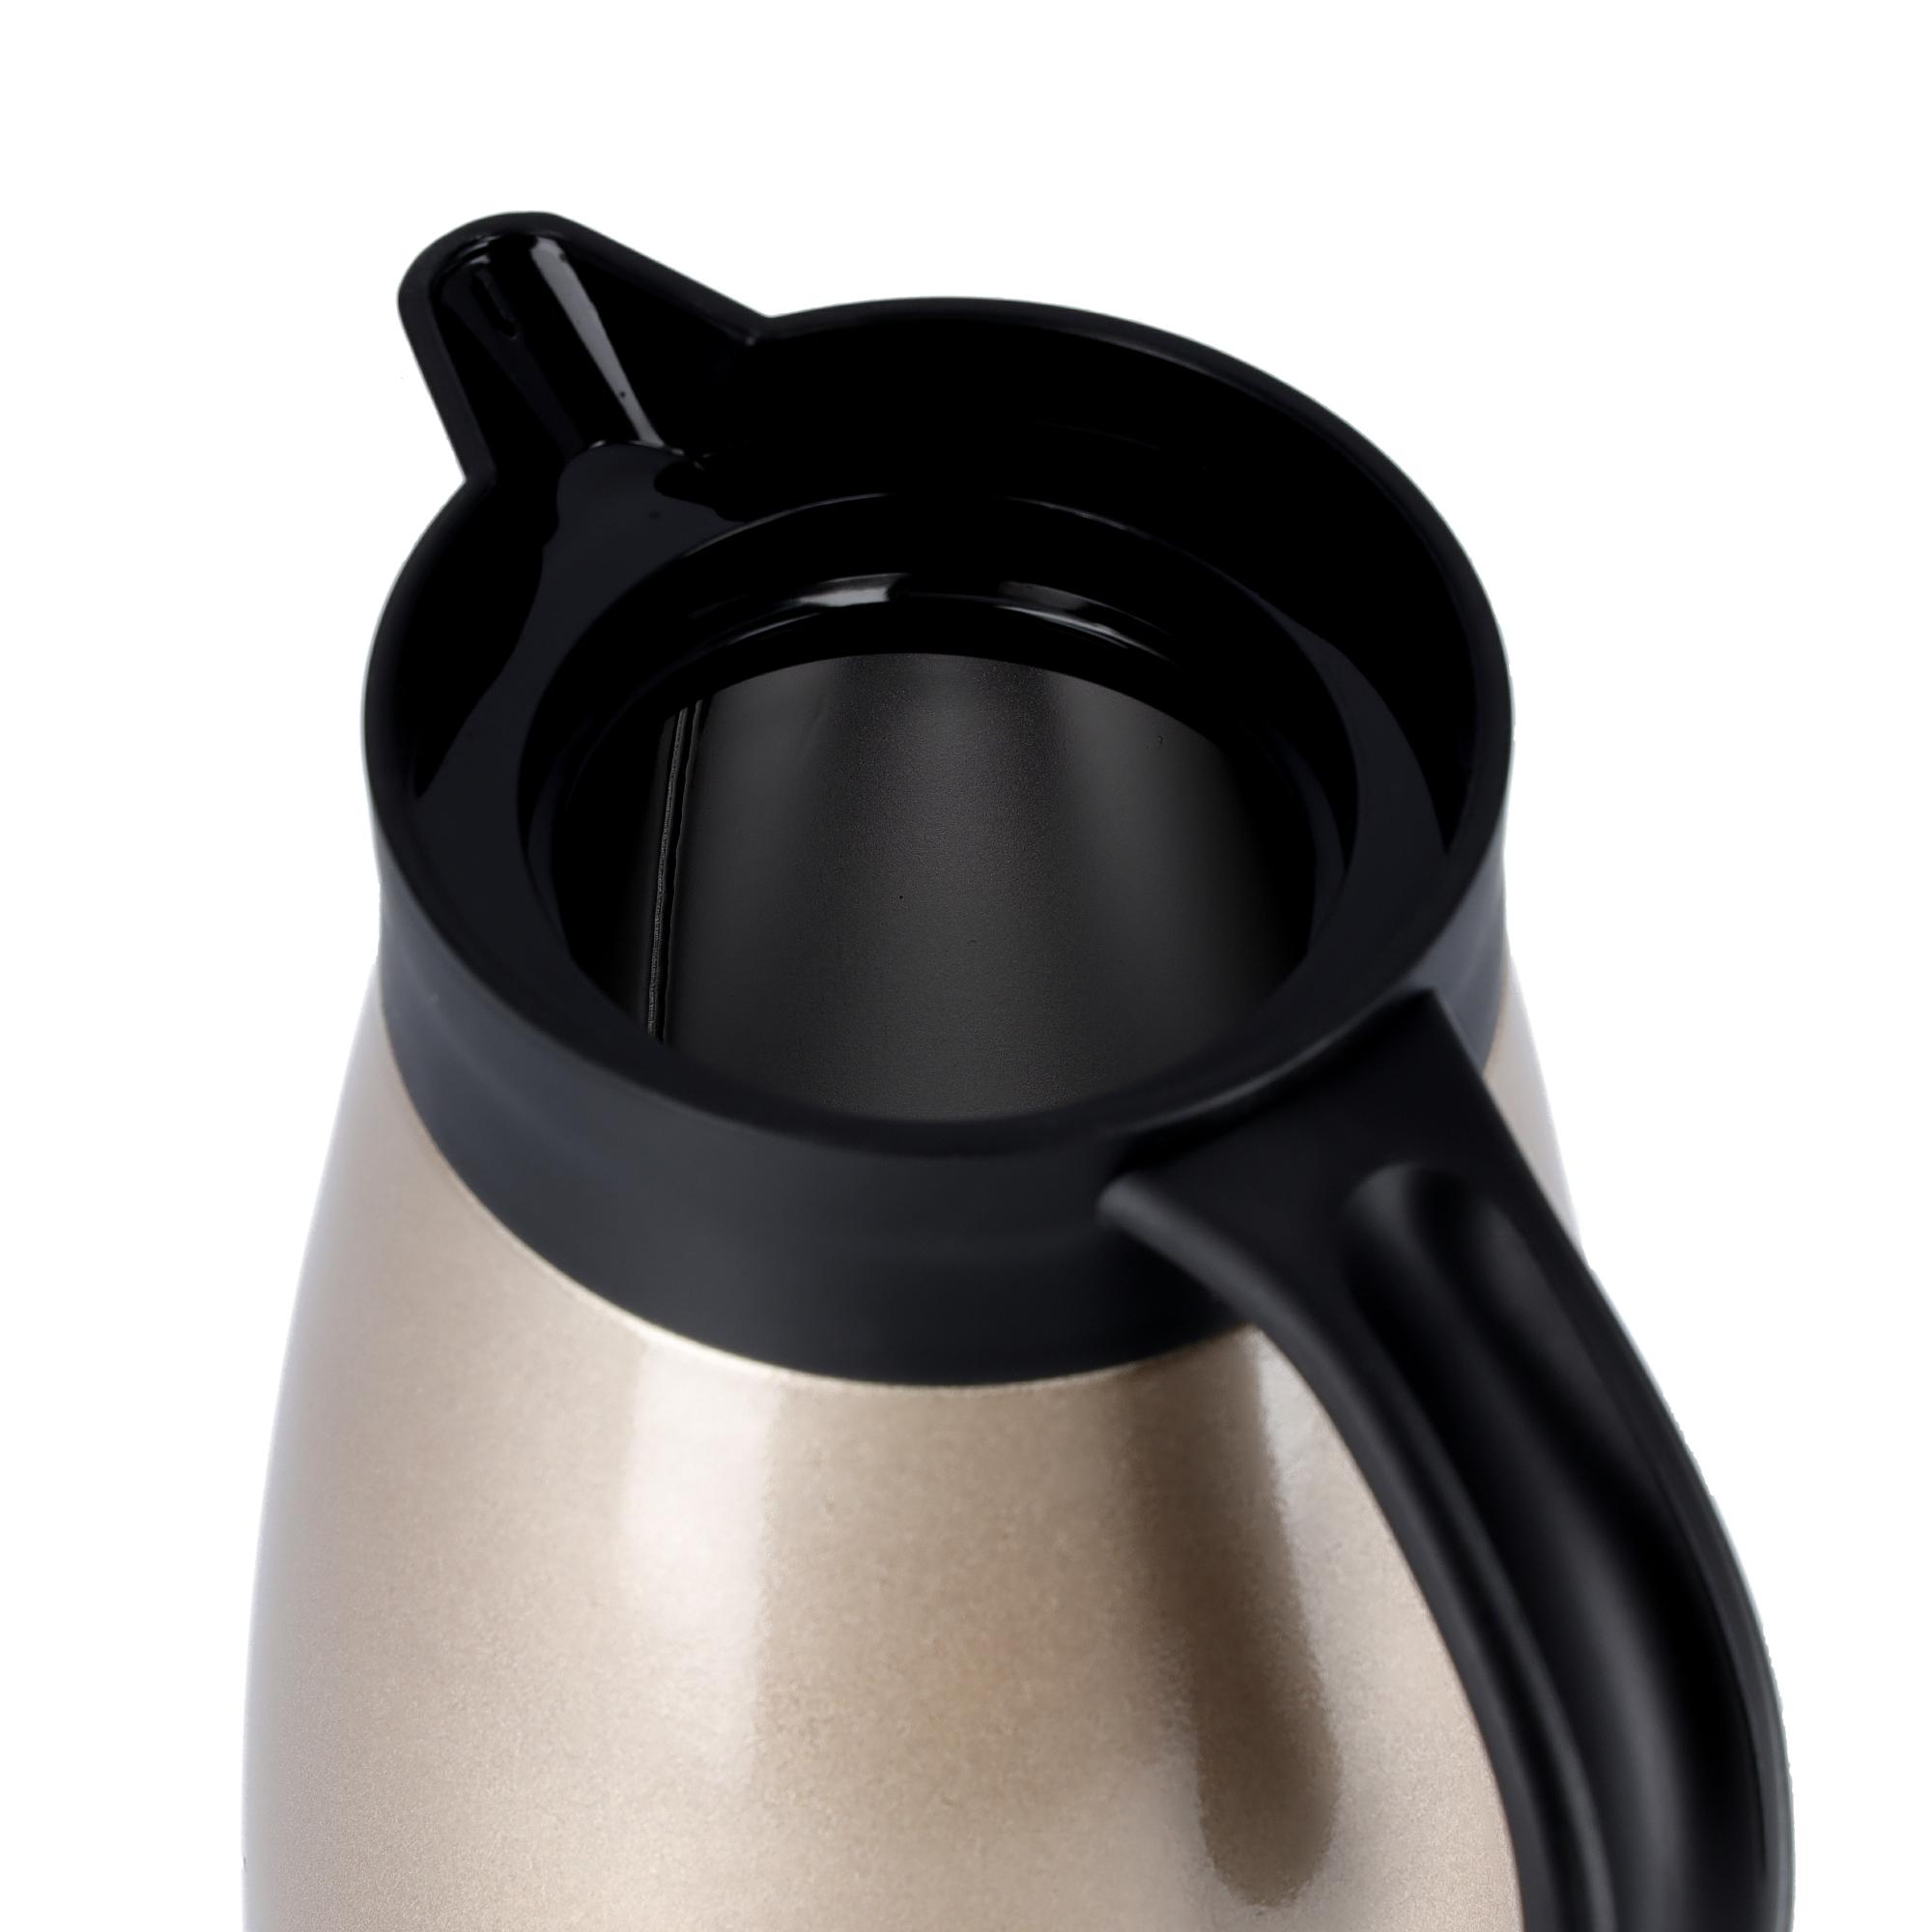 ترمس قهوة حافظ للحرارة 1.5 لتر محمول بارد/ساخن رويال فورد Royalford Hot/Cold 1.5L Coffee Pot - cG9zdDozNzIzMzU=